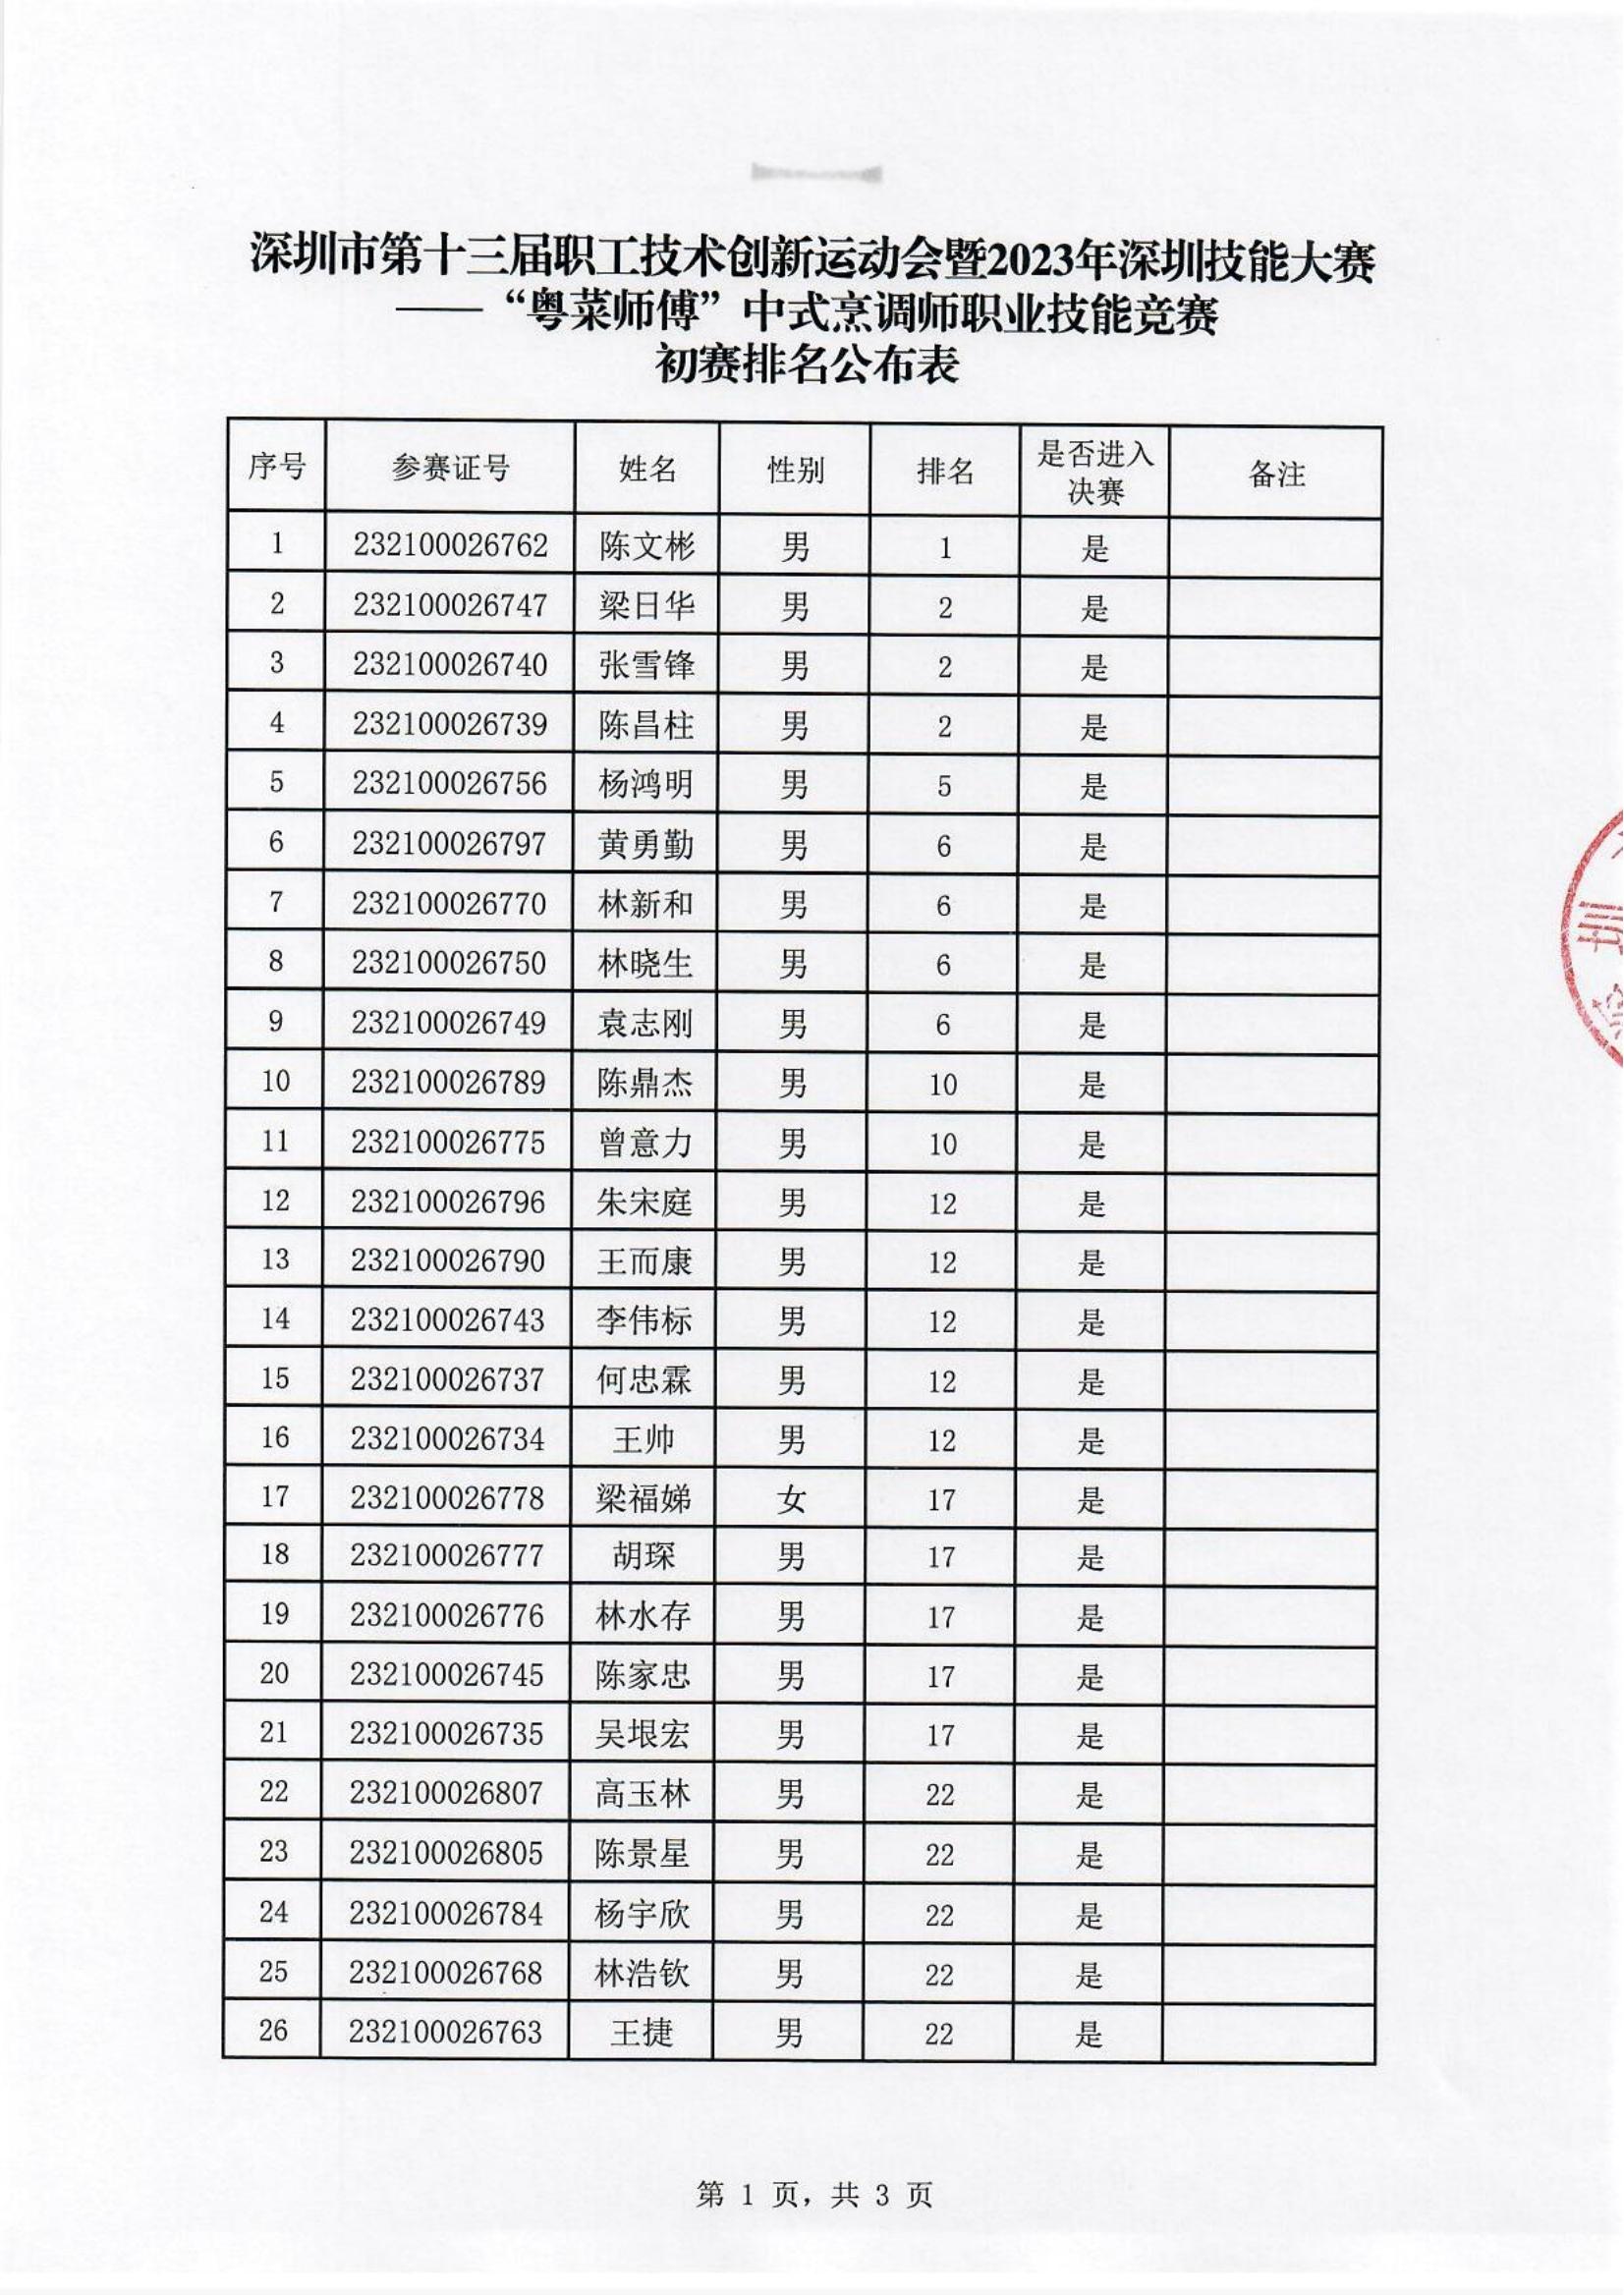 中式烹调职业技能竞赛初赛排名公布表_00.jpg